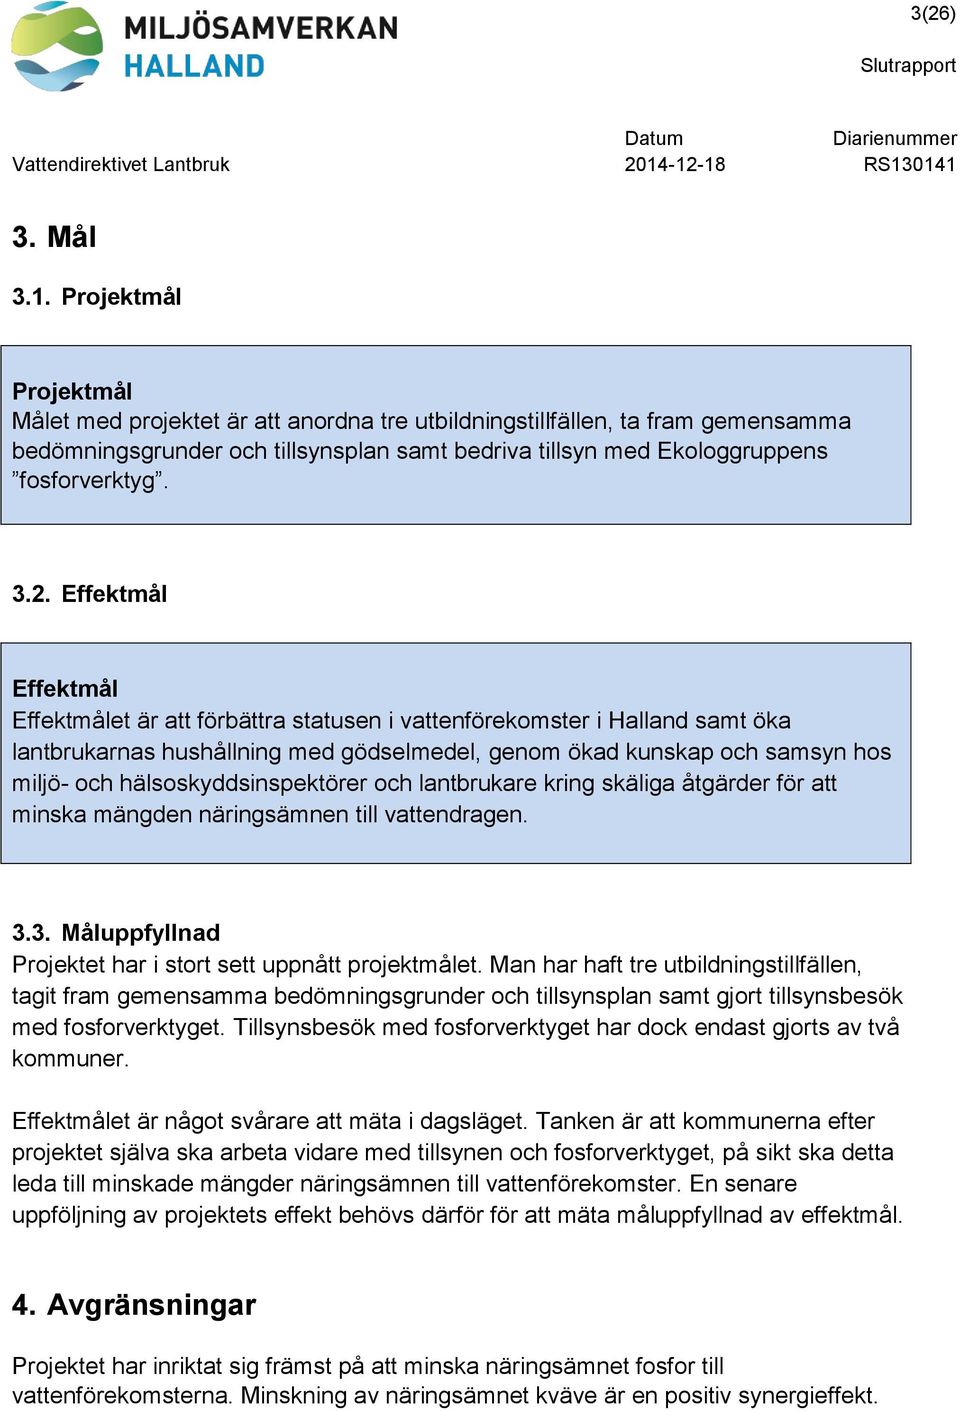 3.2. Effektmål Effektmål Effektmålet är att förbättra statusen i vattenförekomster i Halland samt öka lantbrukarnas hushållning med gödselmedel, genom ökad kunskap och samsyn hos miljö- och